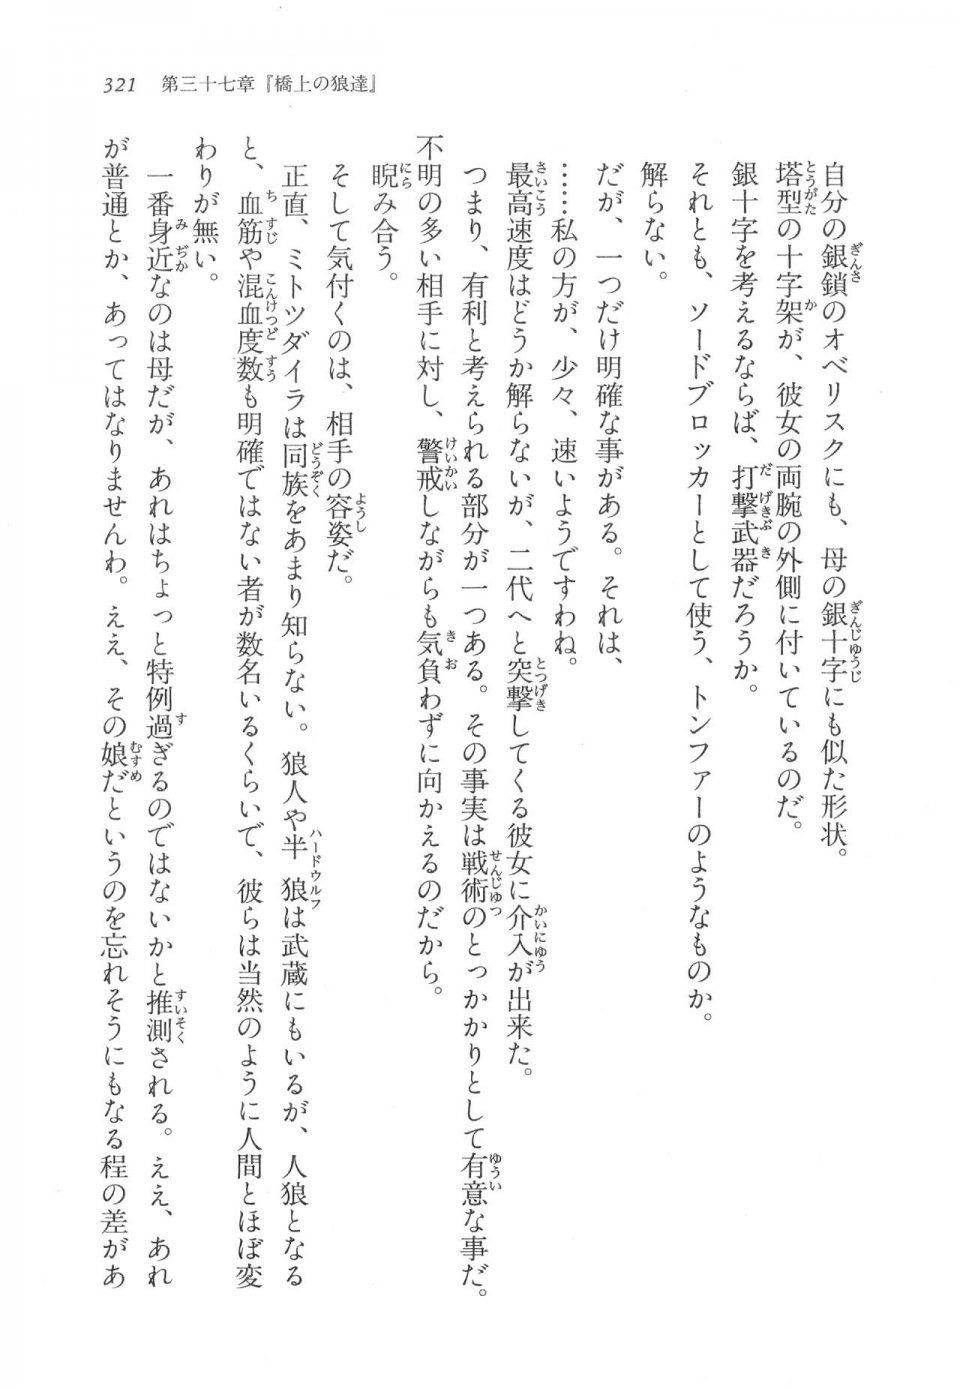 Kyoukai Senjou no Horizon LN Vol 17(7B) - Photo #321